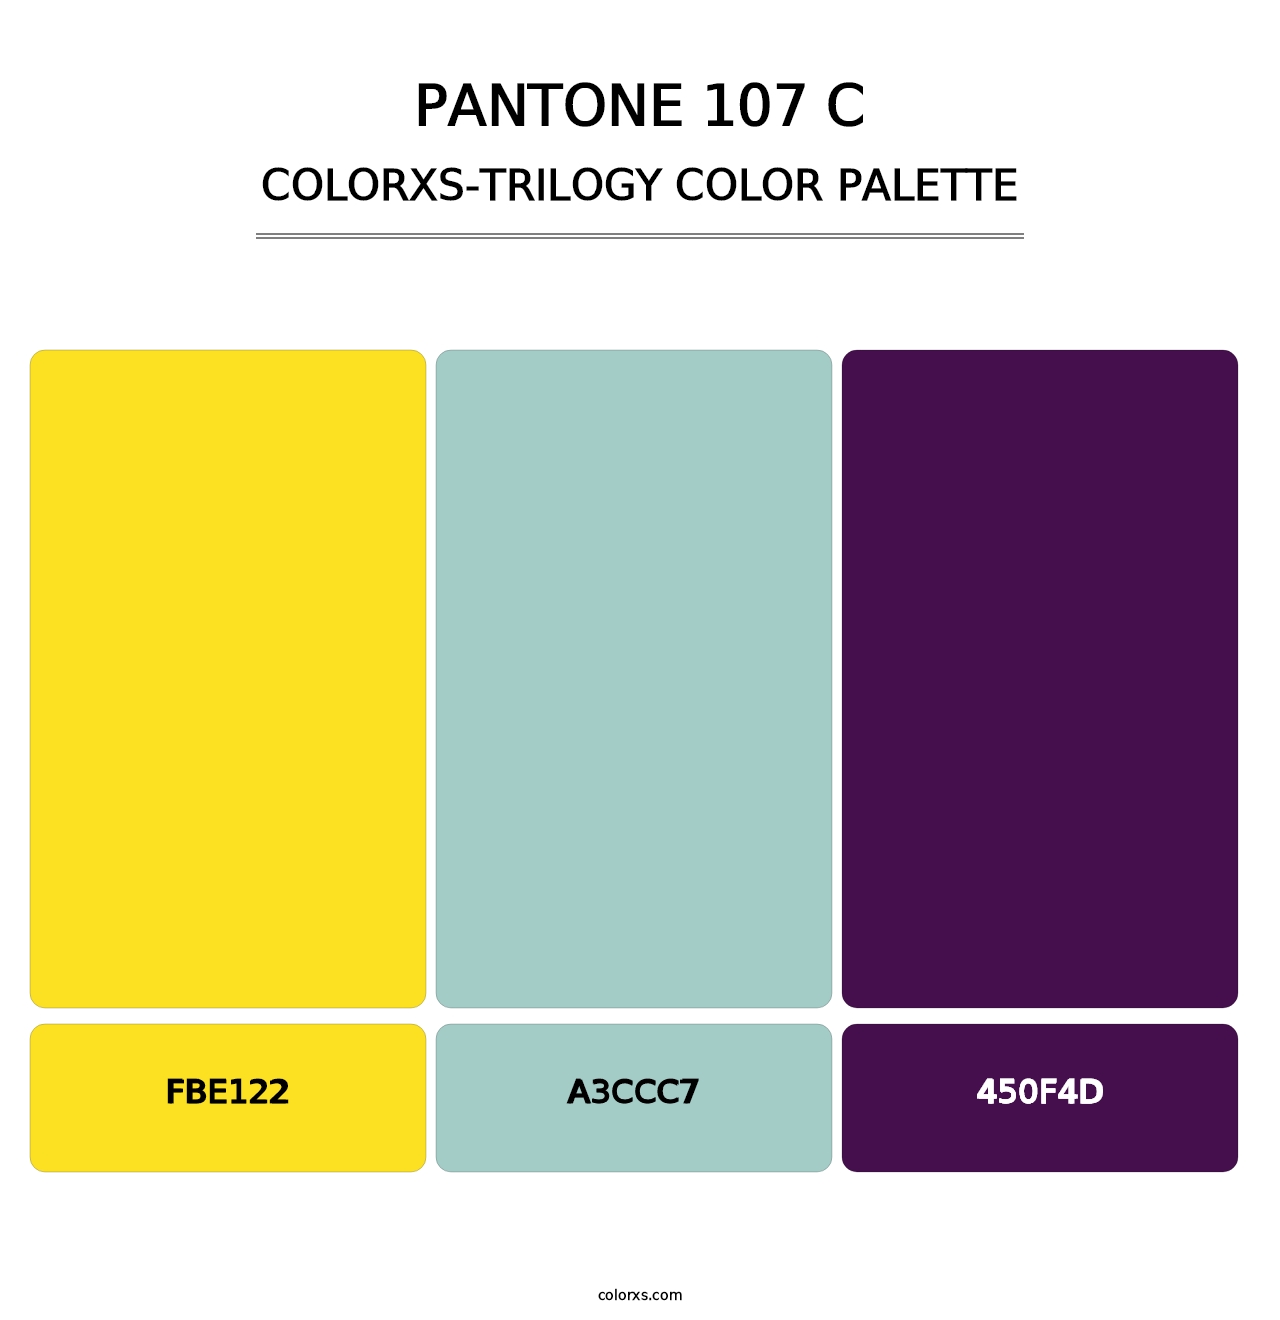 PANTONE 107 C - Colorxs Trilogy Palette